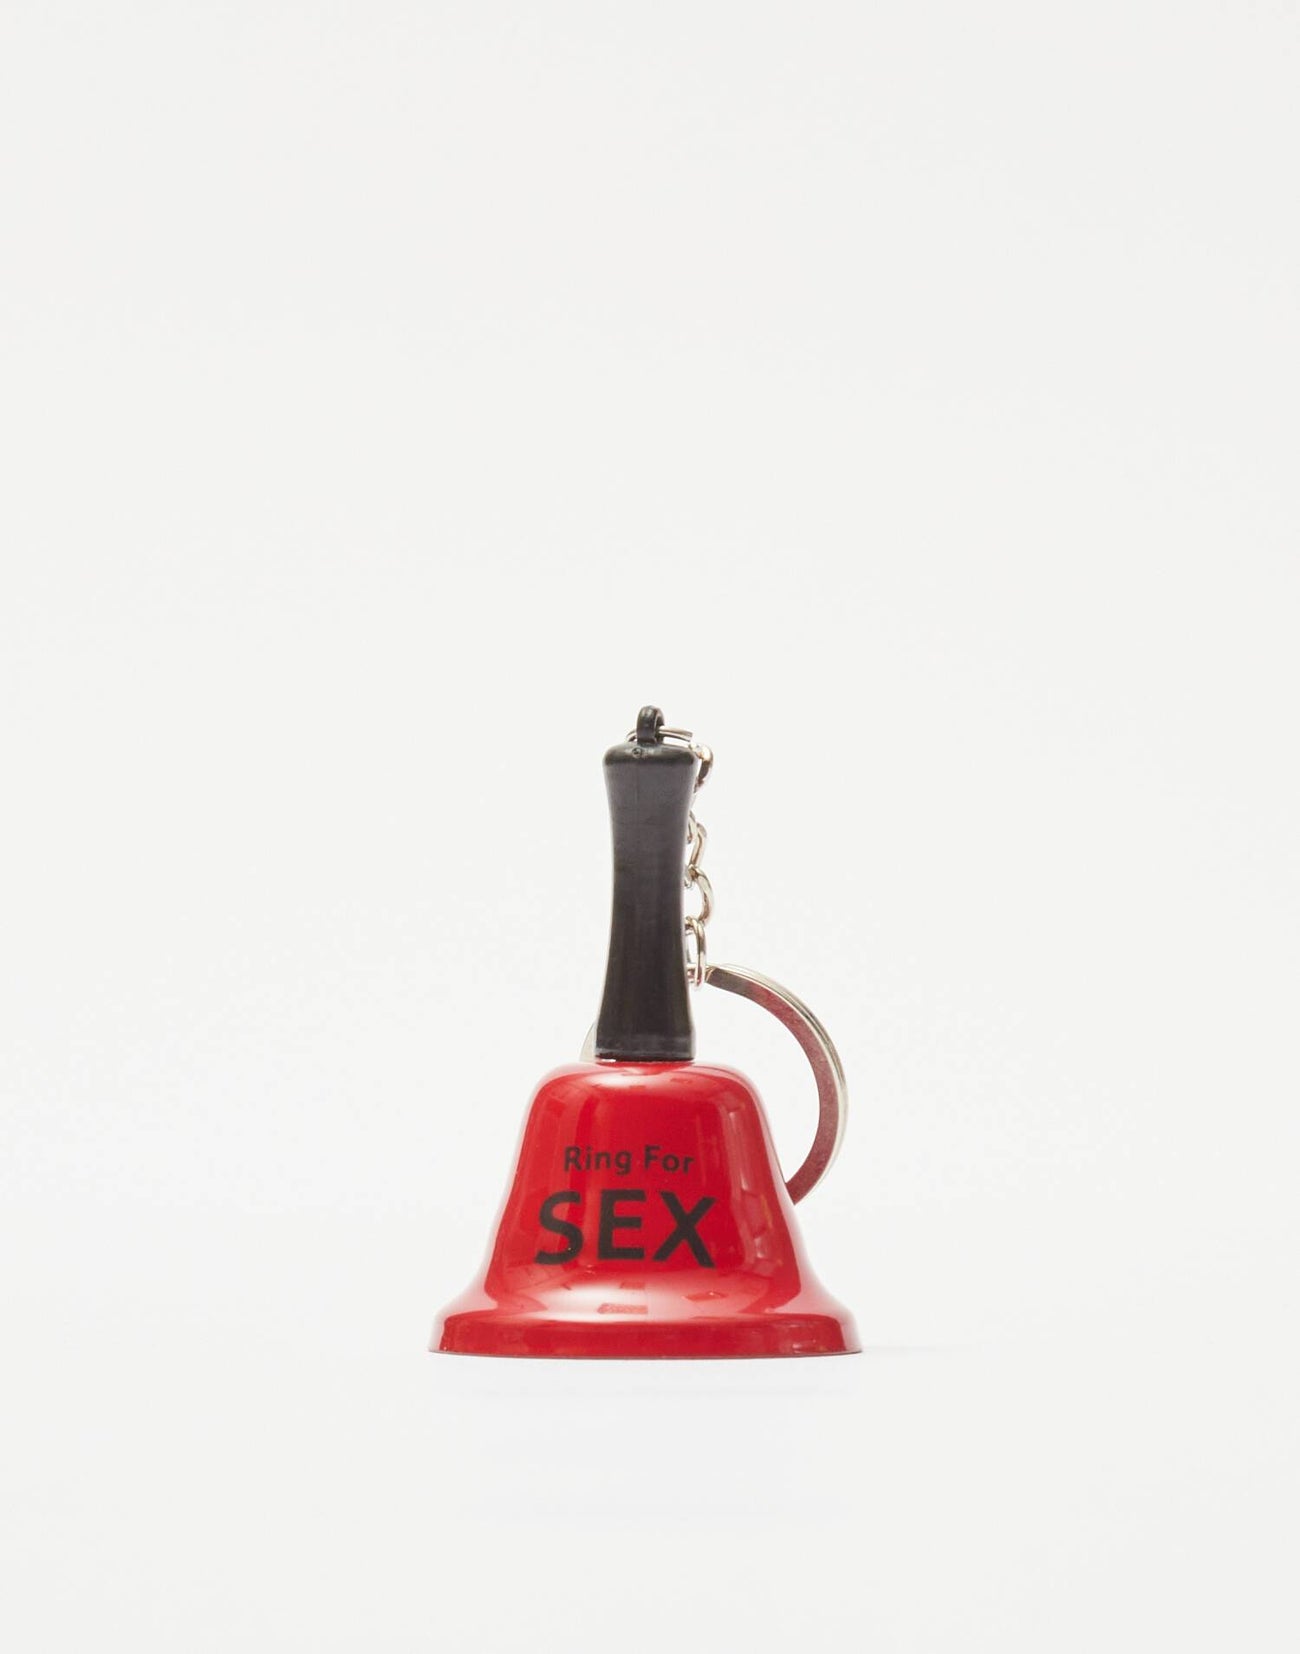 Sex bell